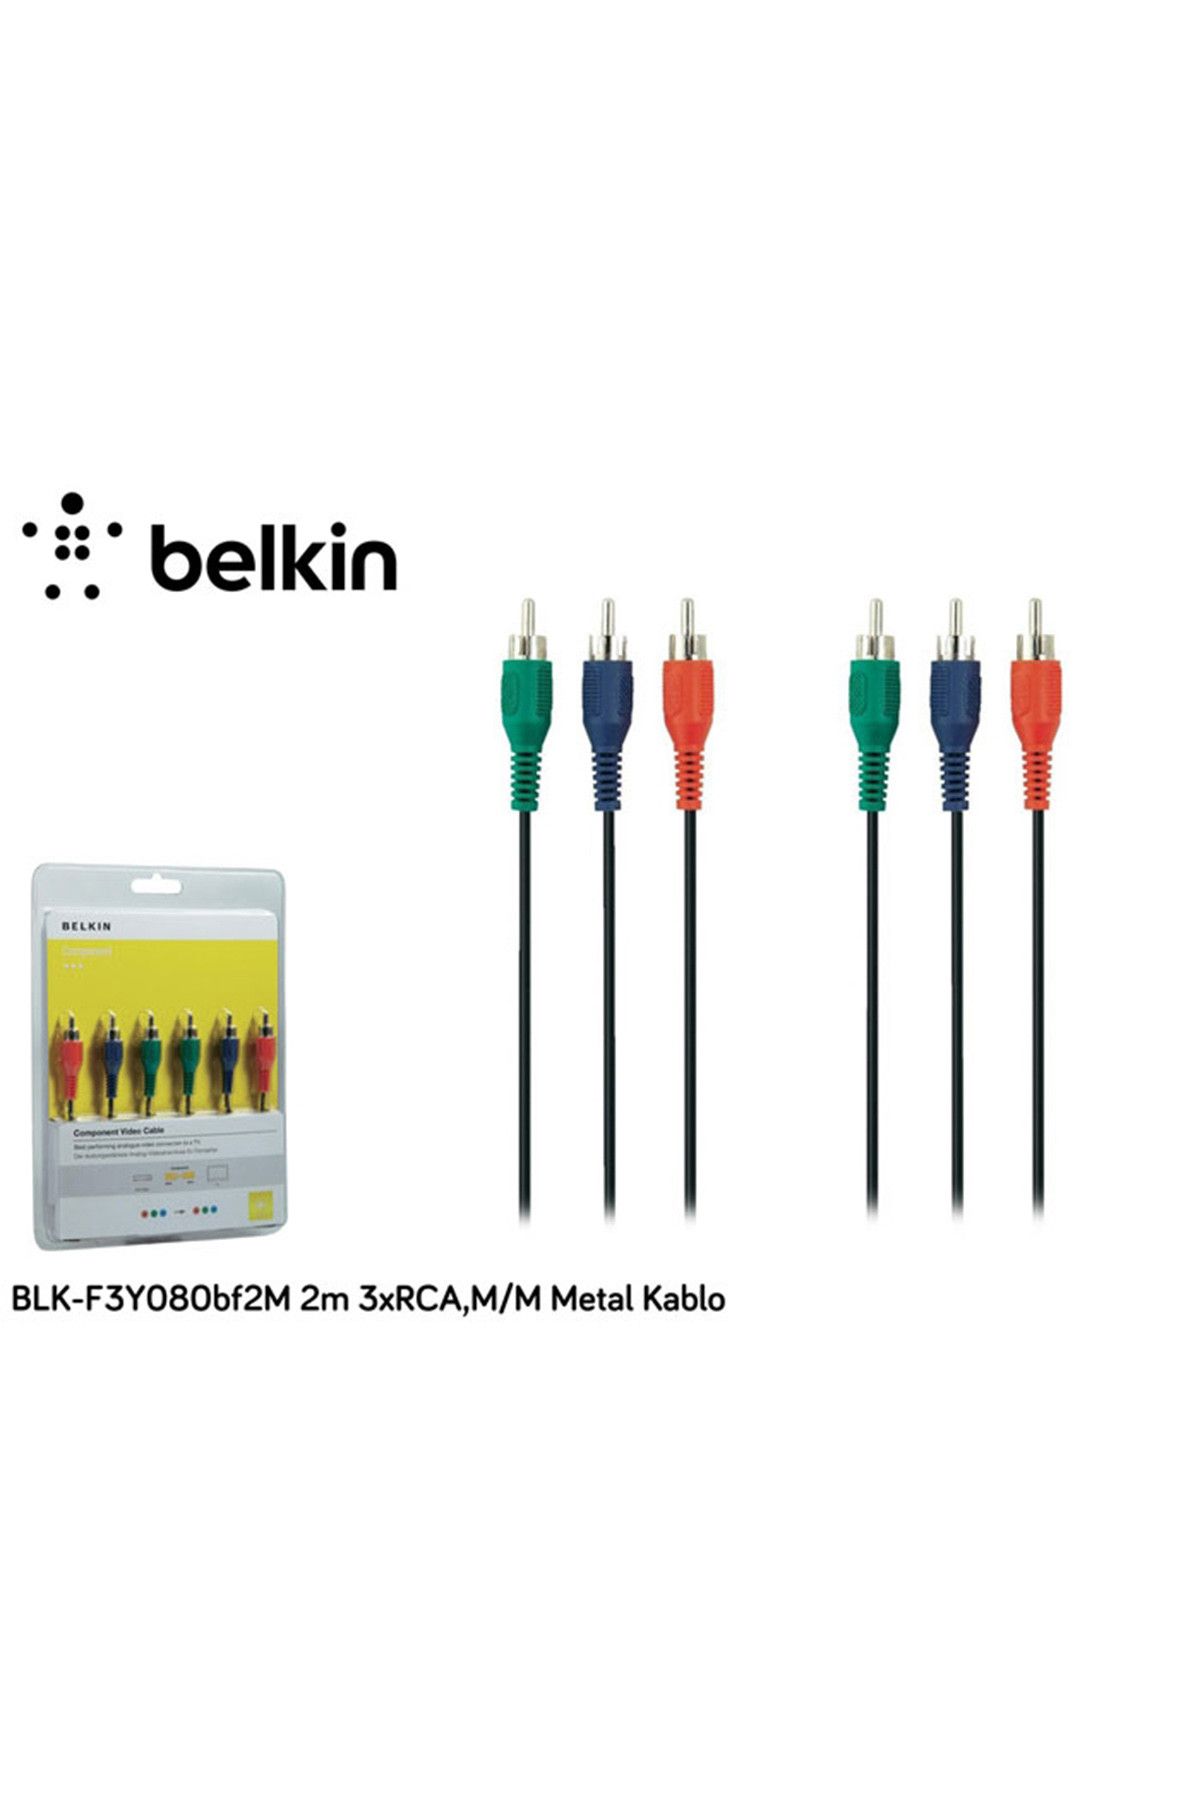 Belkin 2m 3xRCA,M/M Video Kablosu Metal f3y080bf2m